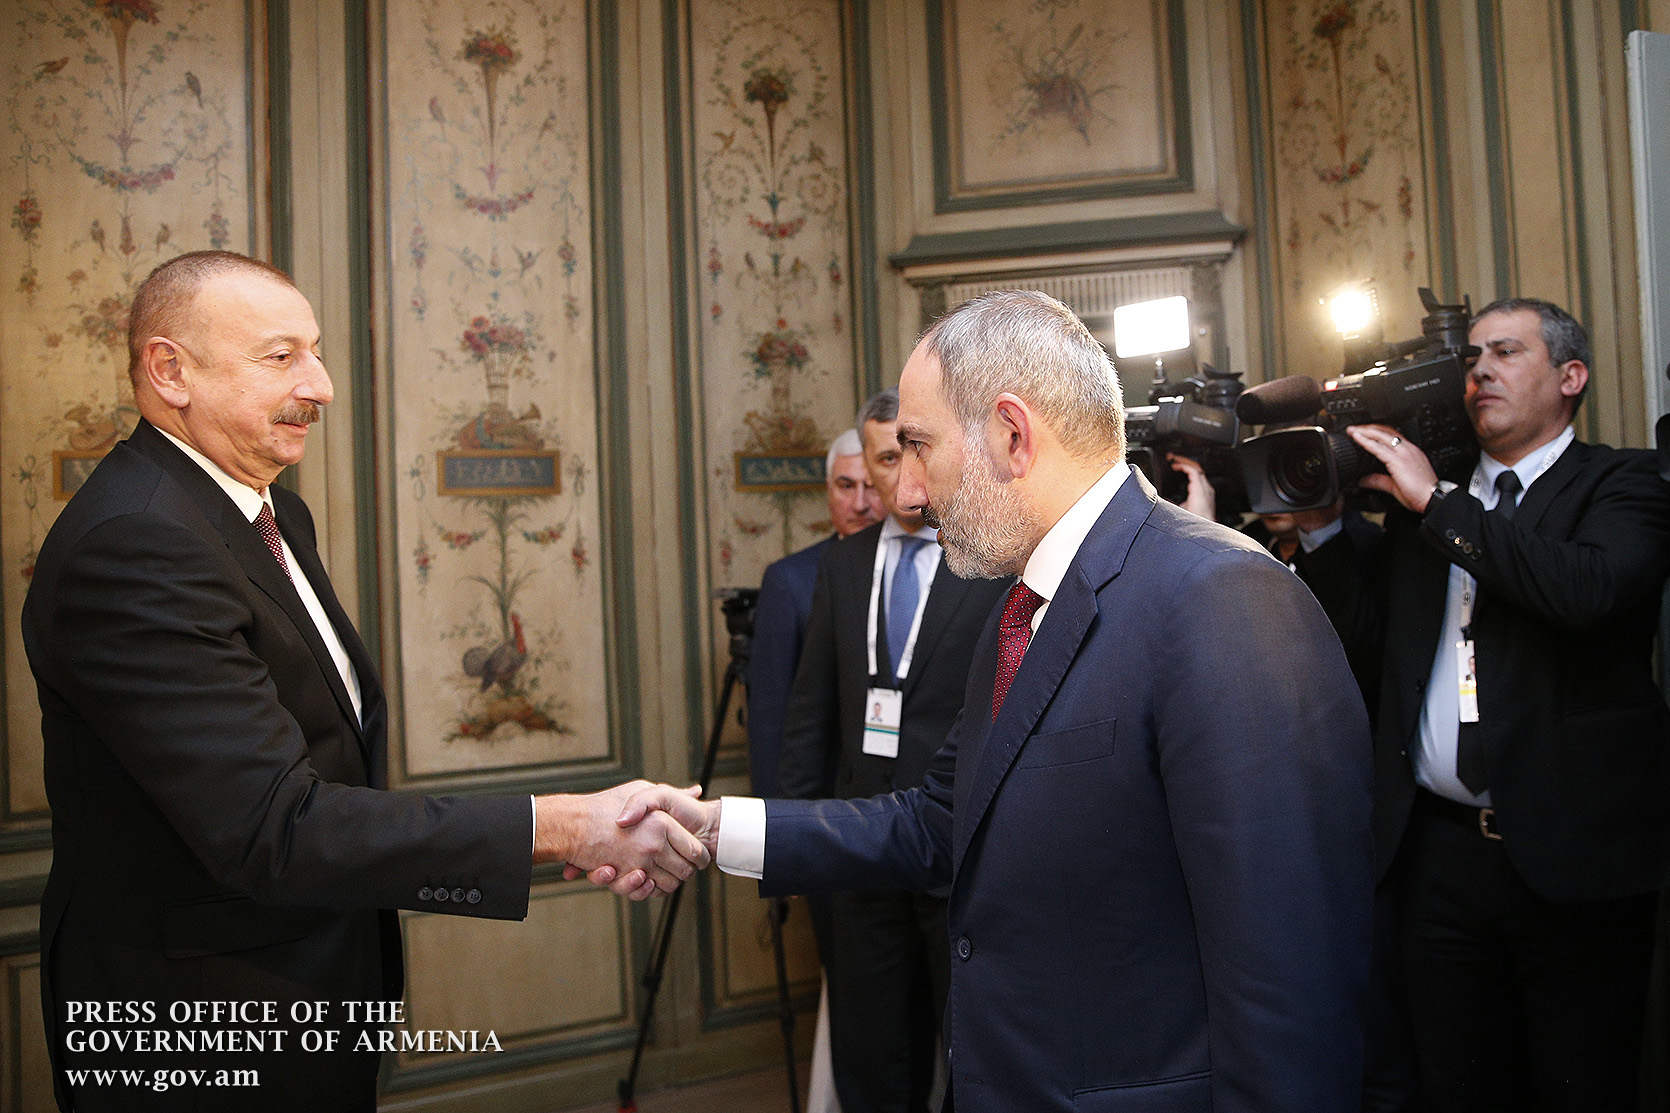 ԱՊՀ ոչ պաշտոնական գագաթնաժողովին անպայման շփում կլինի Ադրբեջանի նախագահի հետ. Փաշինյան